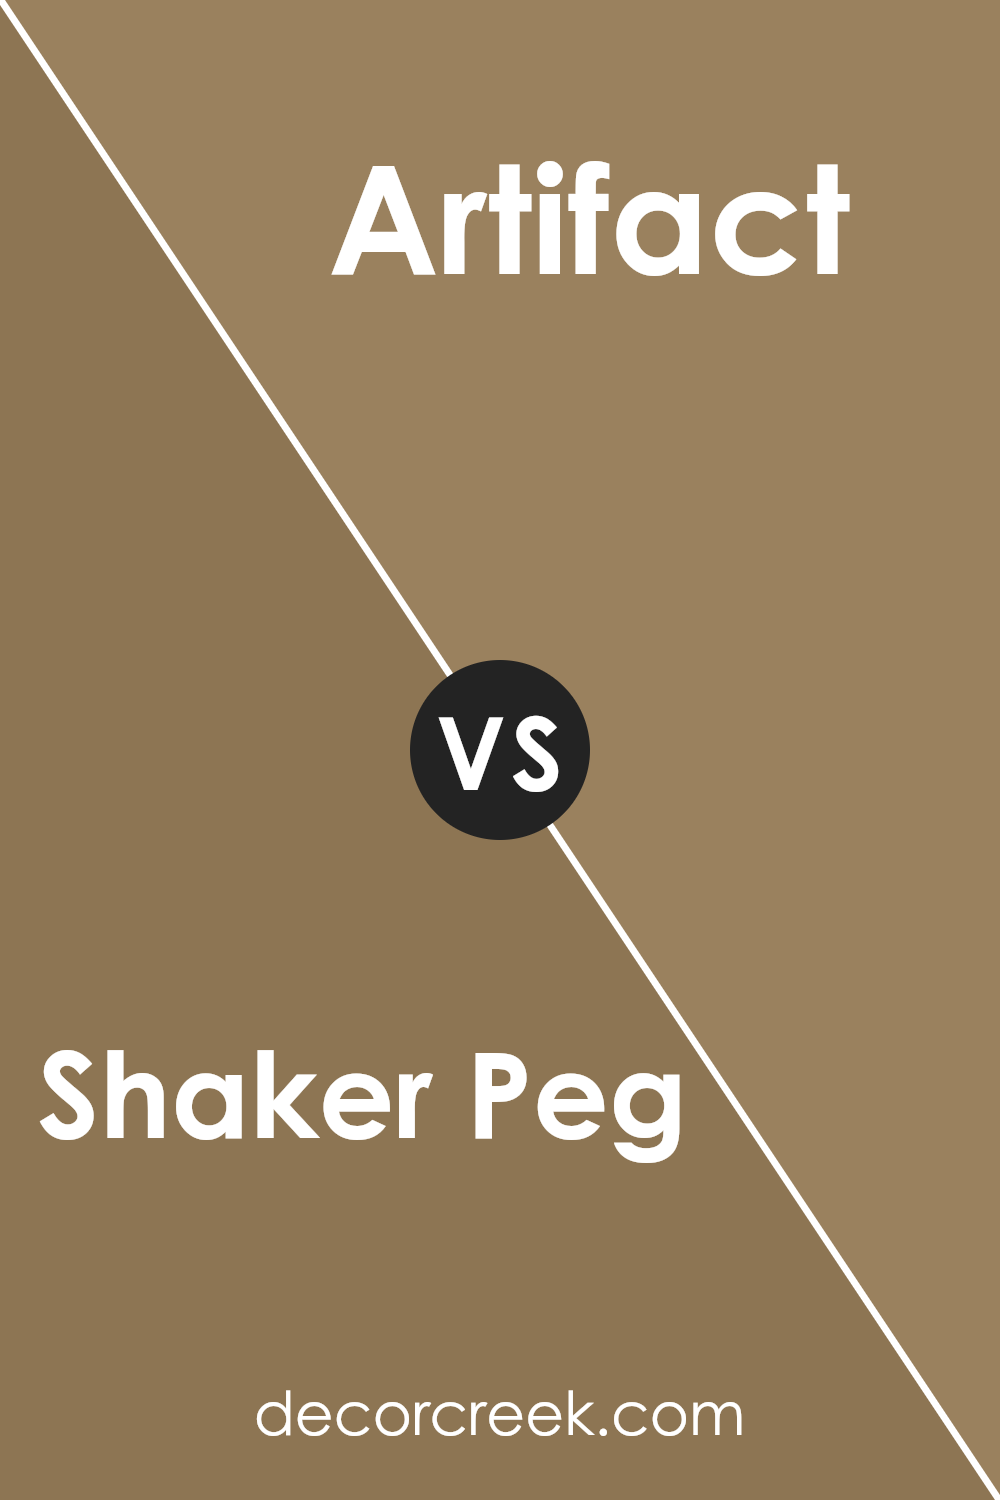 shaker_peg_sw_9539_vs_artifact_sw_6138